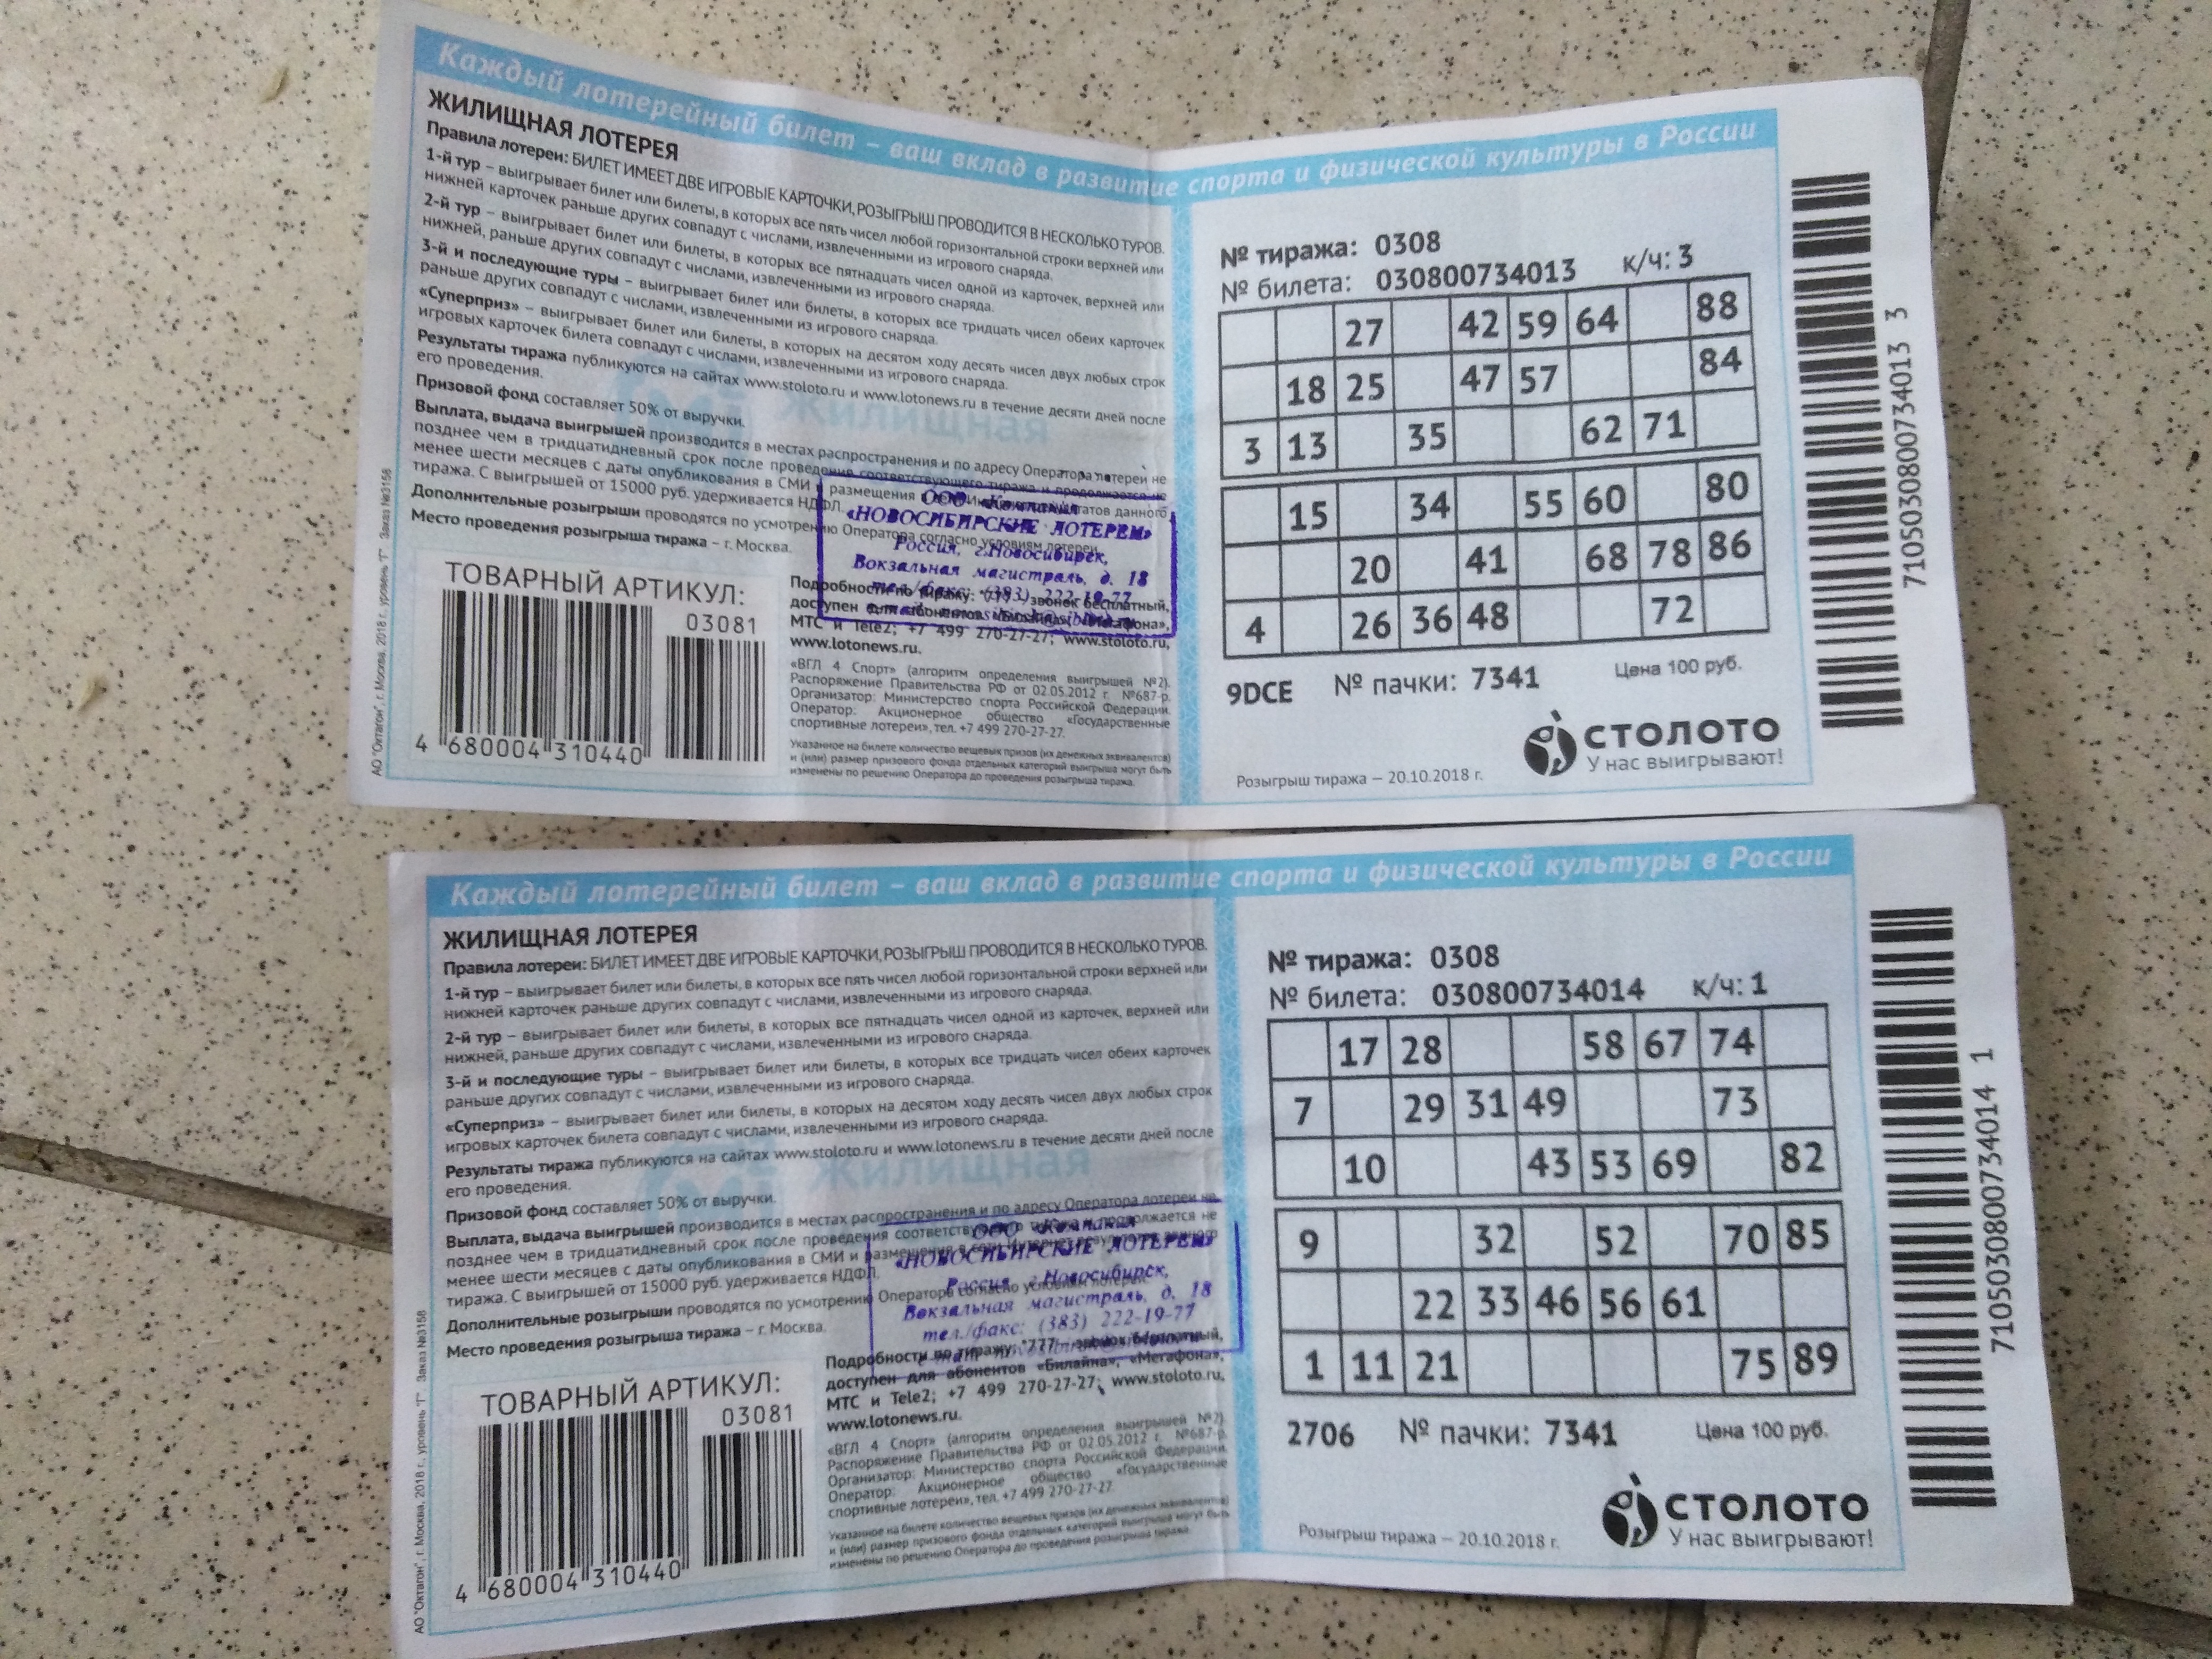 Результаты лотереи новосибирск. Выигрышные билеты Столото. Правила лотереи Новосибирской области.